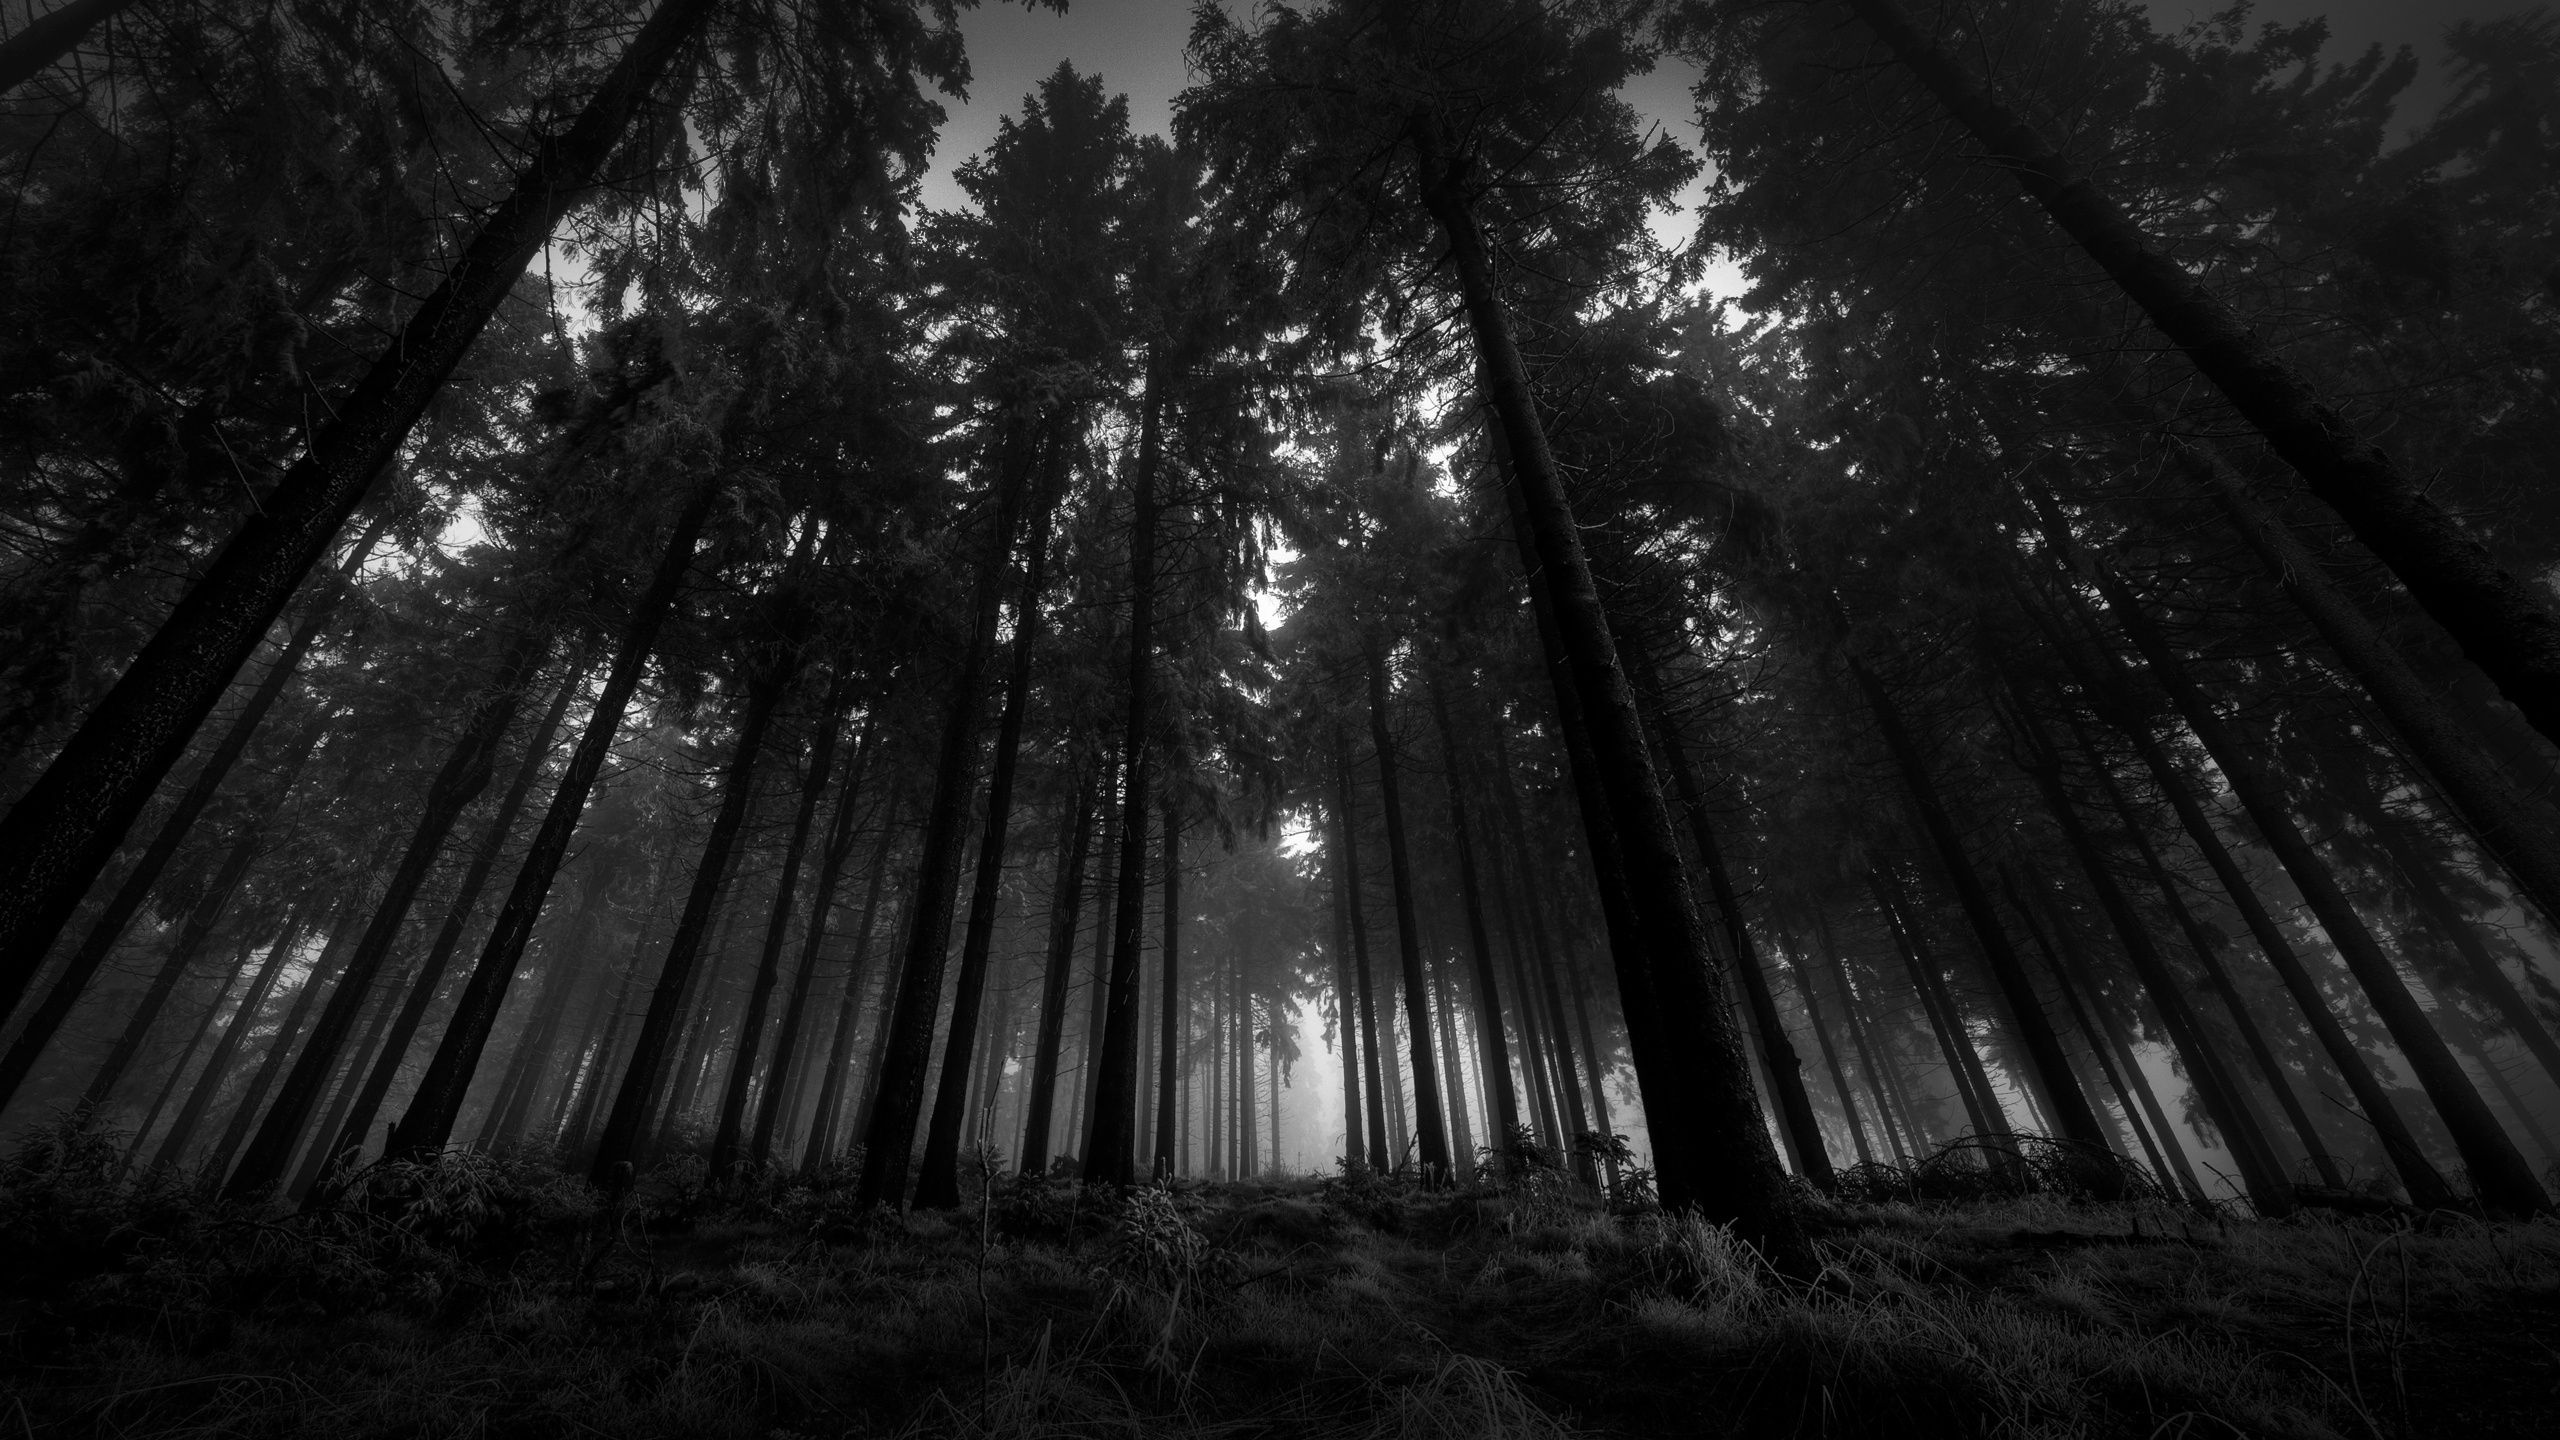 Hình nền rừng đen đẹp: Thích những hình ảnh thiên nhiên và muốn trang trí màn hình của bạn với một hình nền đẹp? Hãy xem những hình nền rừng đen đẹp, với sắc đen đậm và những vệt sáng tạo ra bởi ánh sáng.